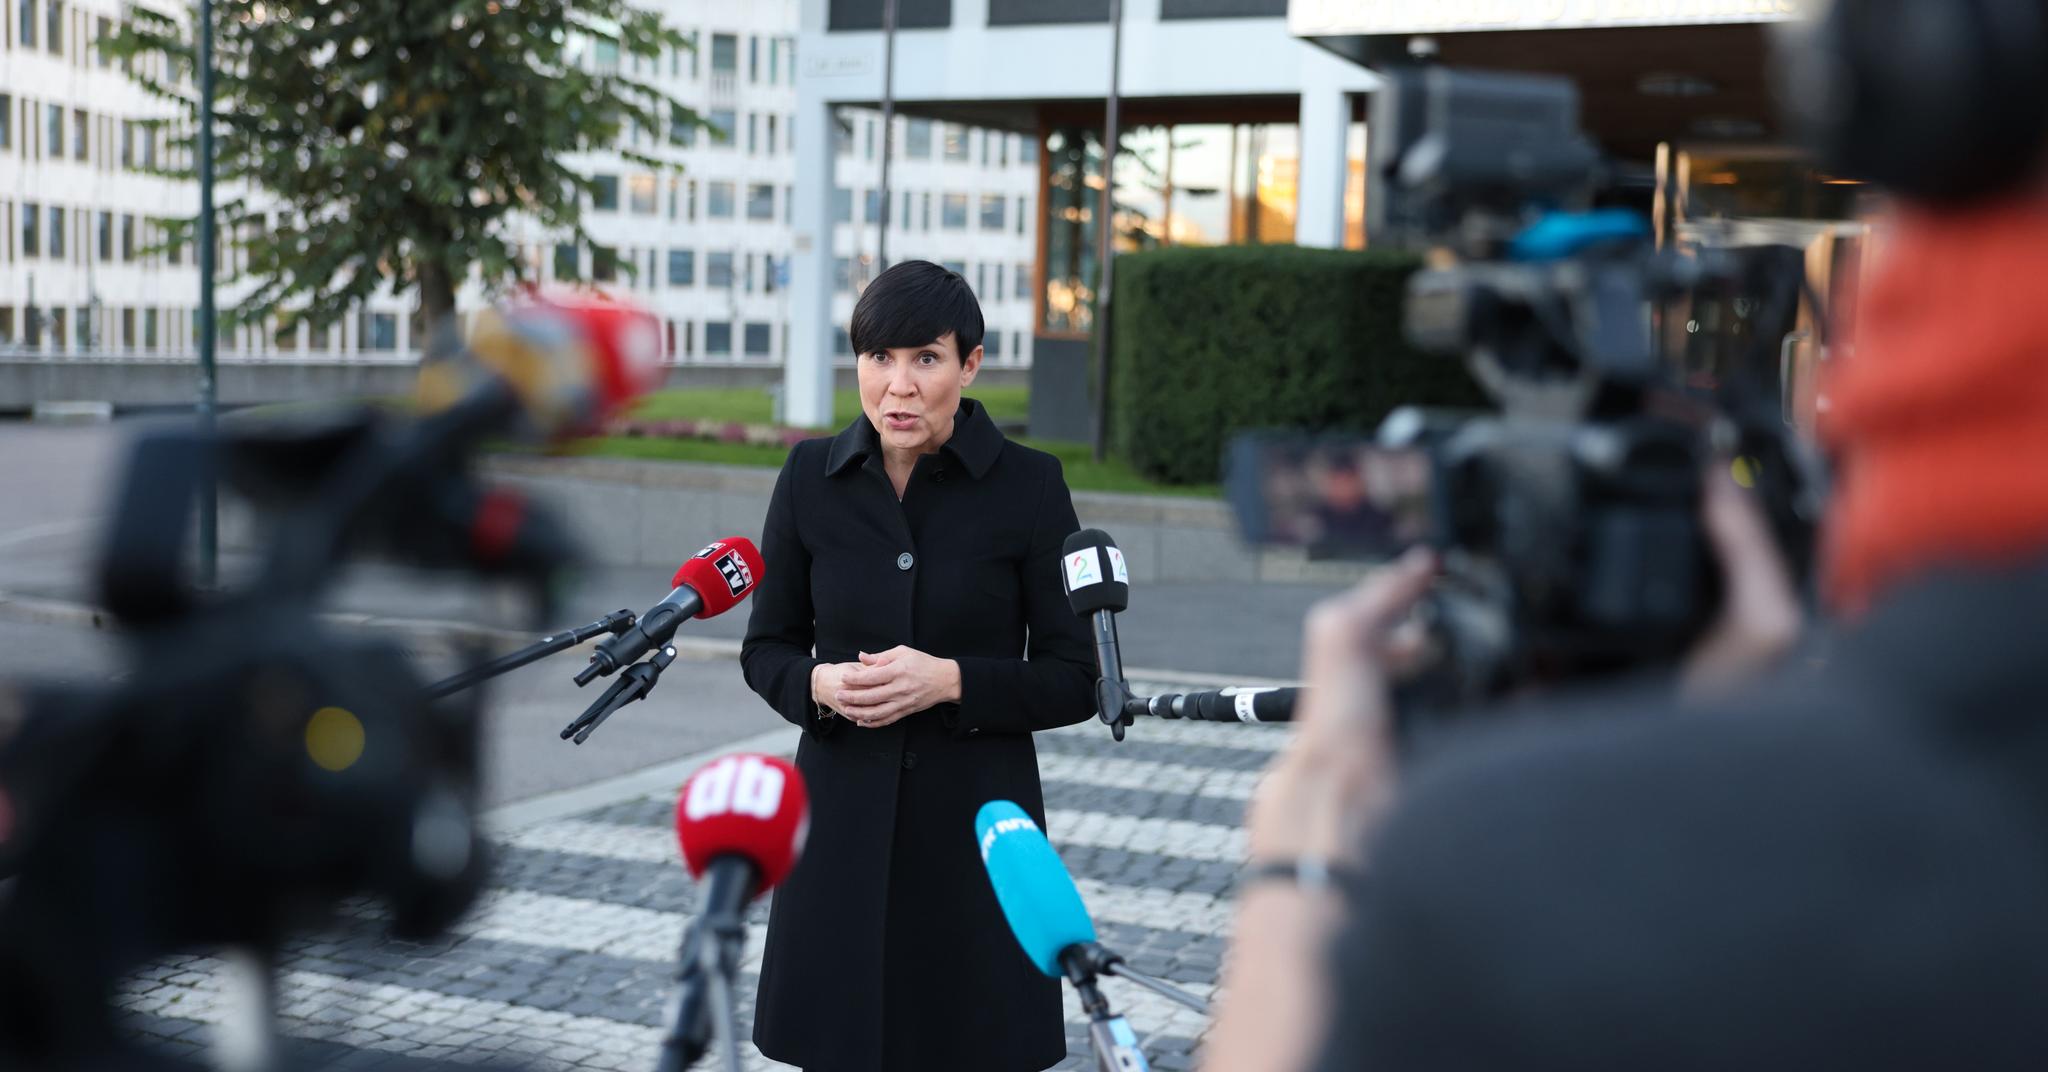 Tirsdag hevdet utenriksminister Ine Marie Eriksen Søreide (H) å ha beviser for at Russland sto bak datainnbruddet i Stortinget 24. august.